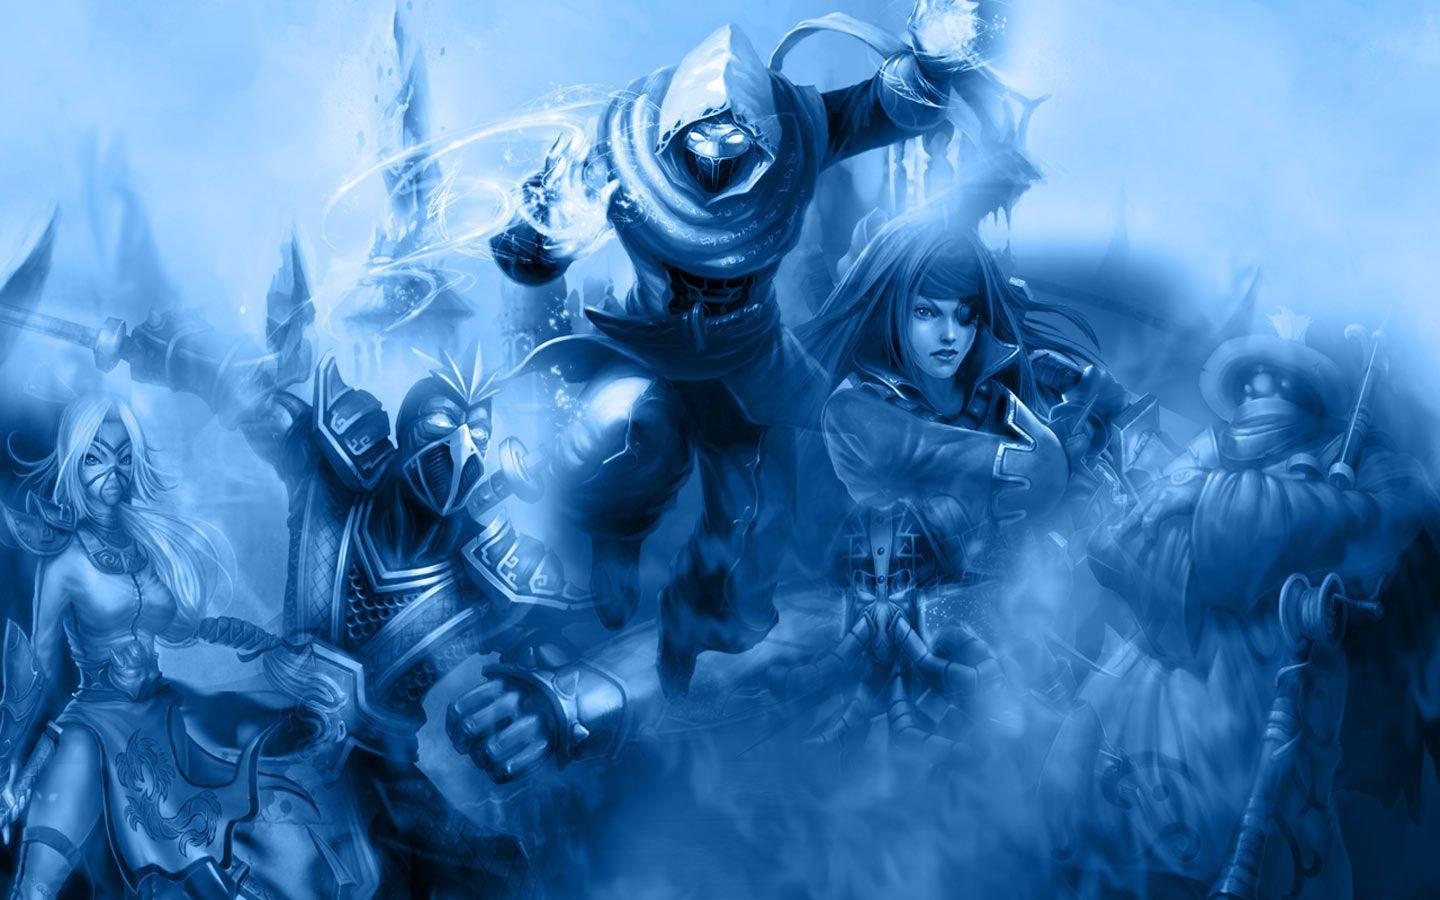 Wallpaper y Background del League of Legends League of Legends